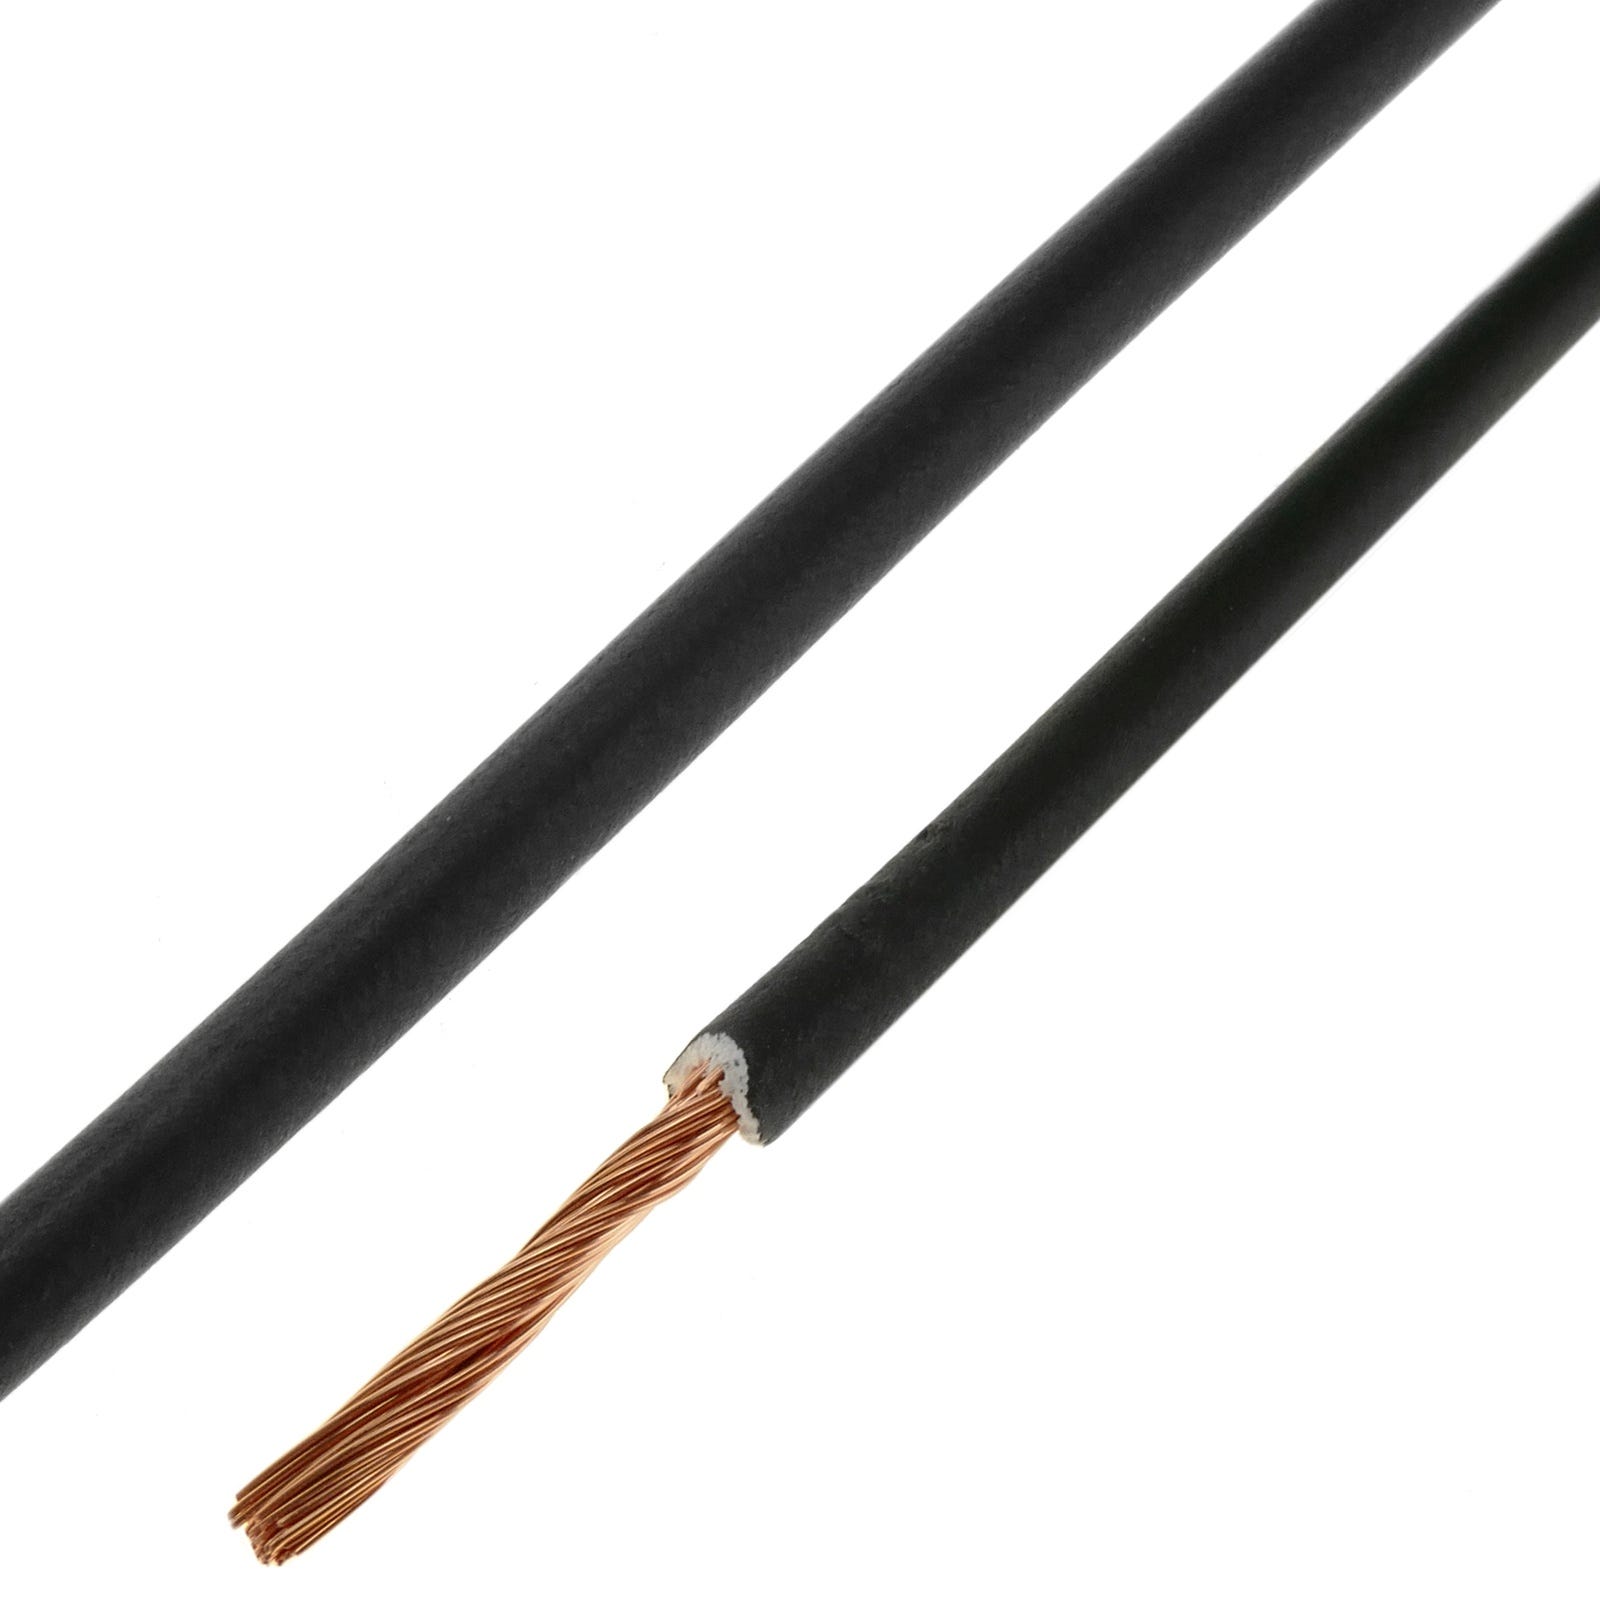 Bobina de cable eléctrico de LSHF de color negro 2.5 mm y 200 m